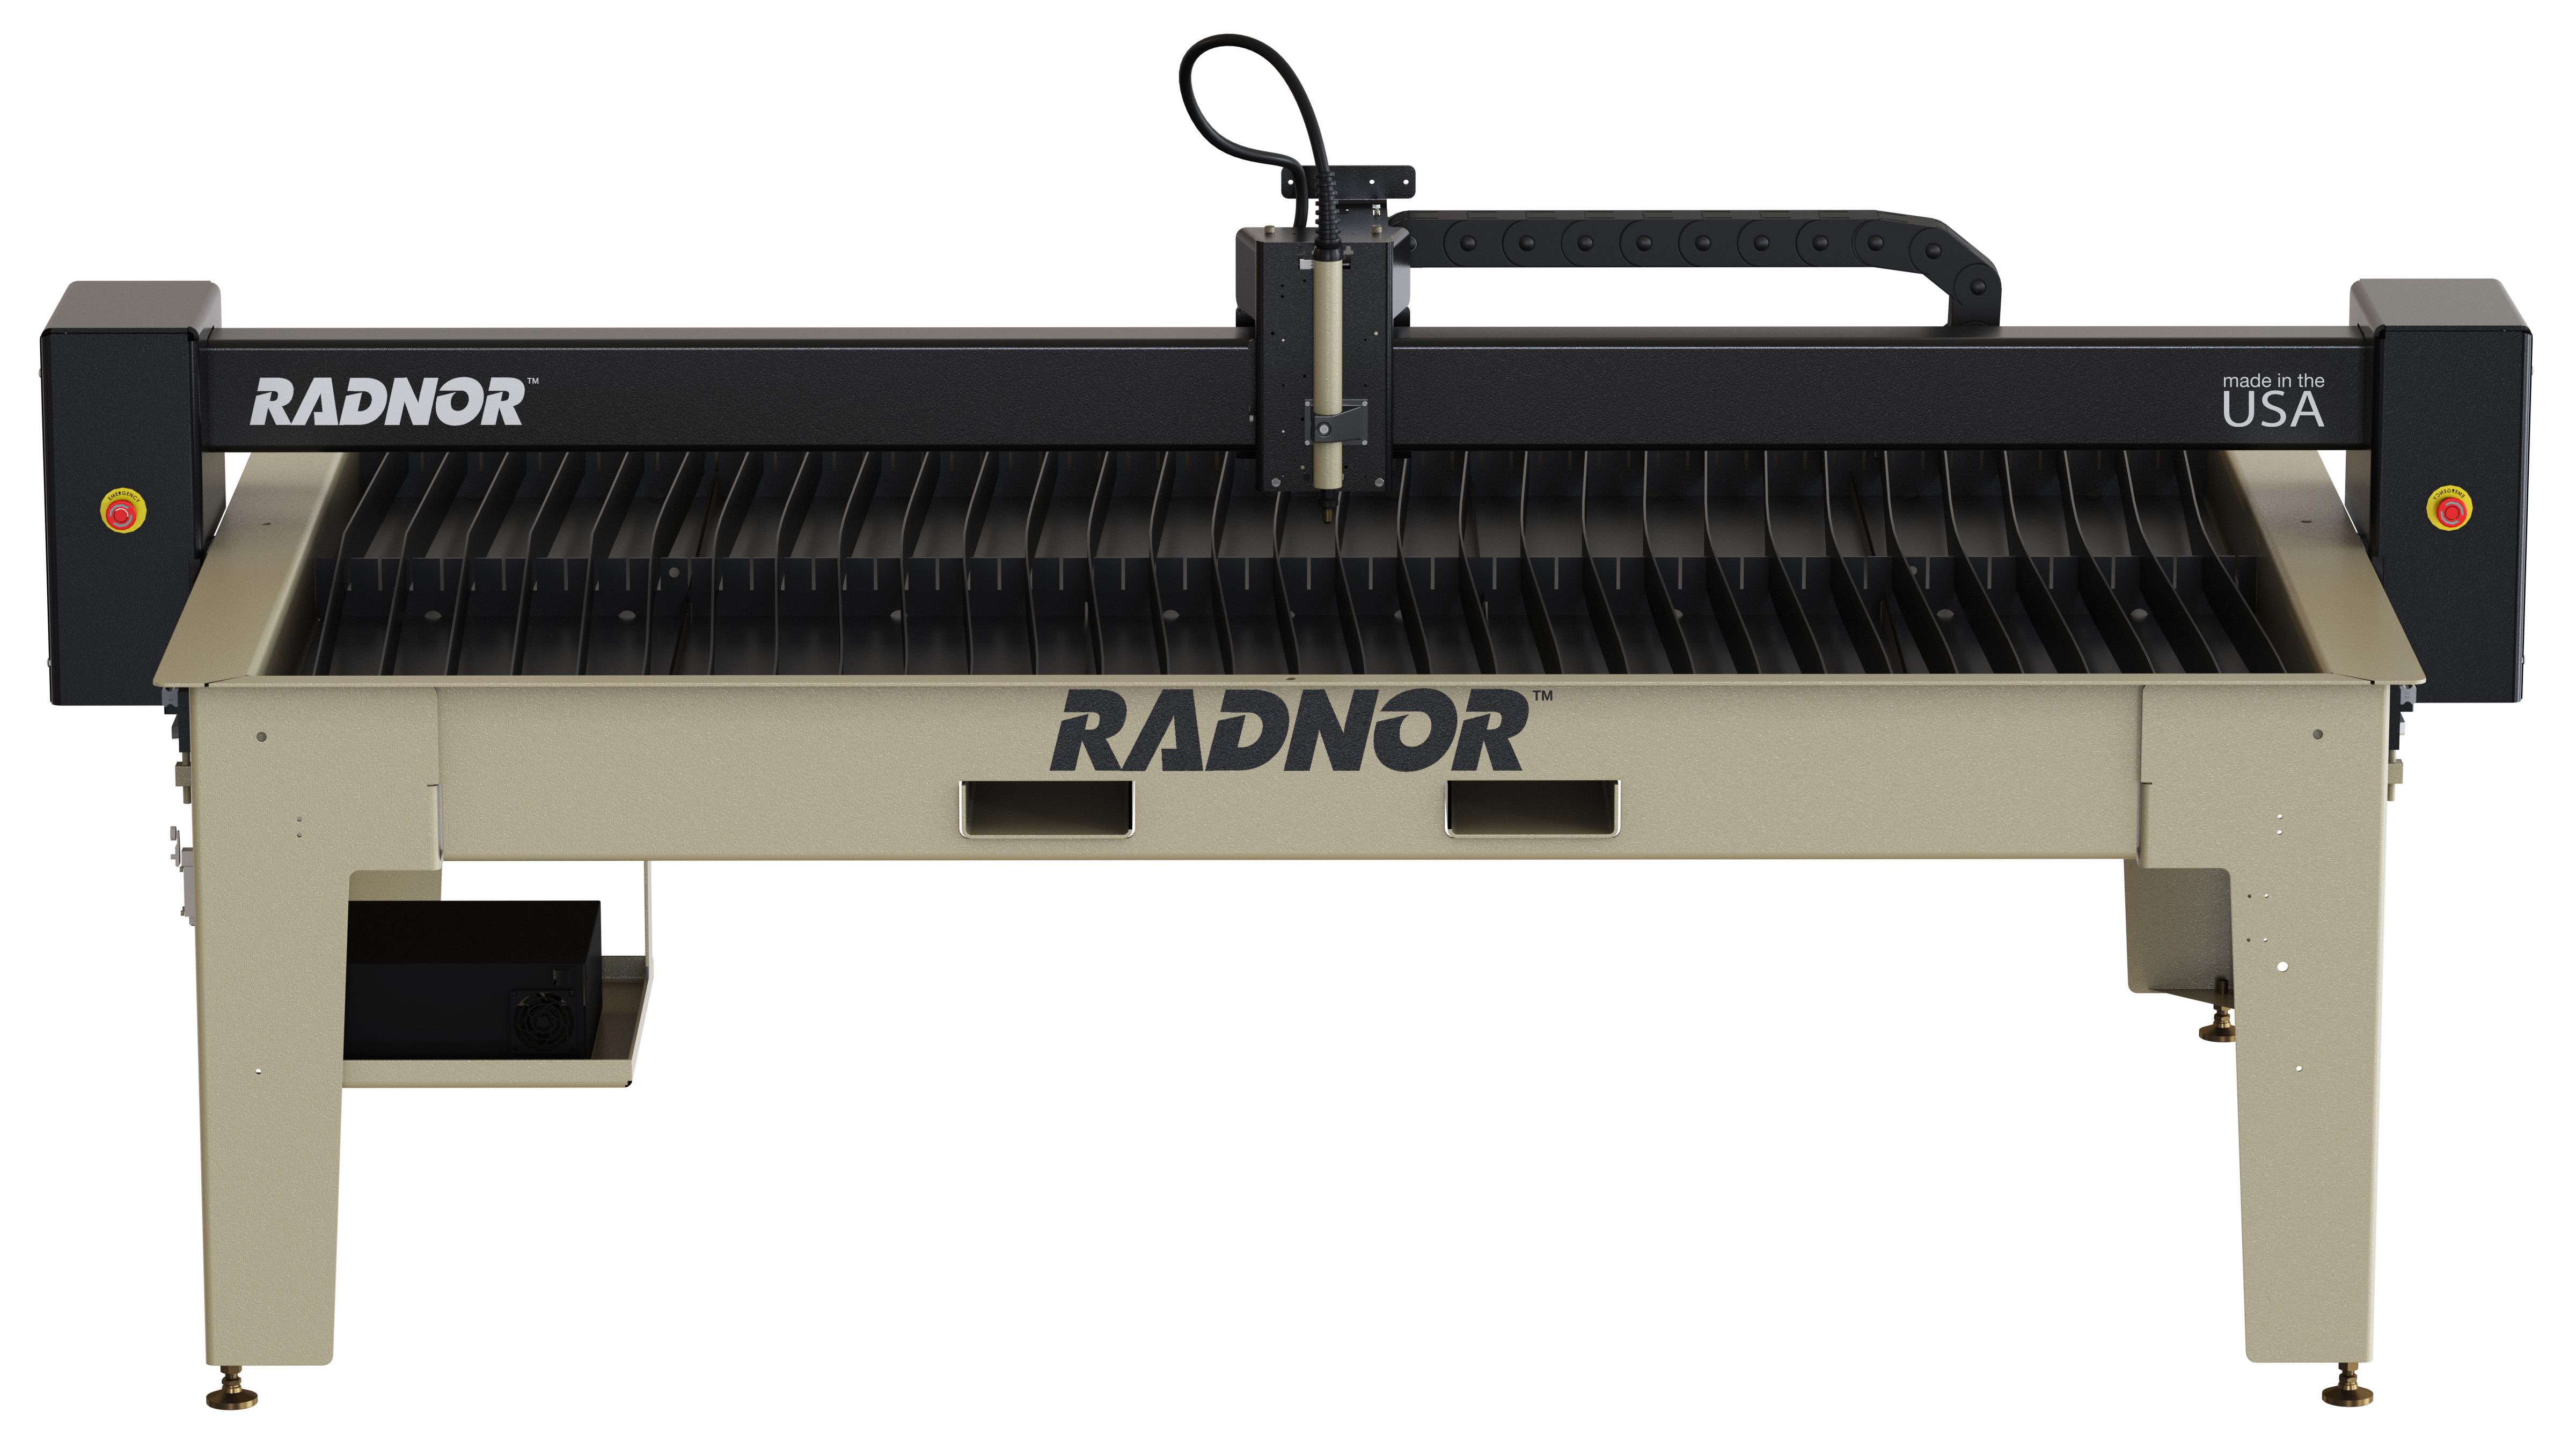 4’x8’ RADNOR plasma cutting table